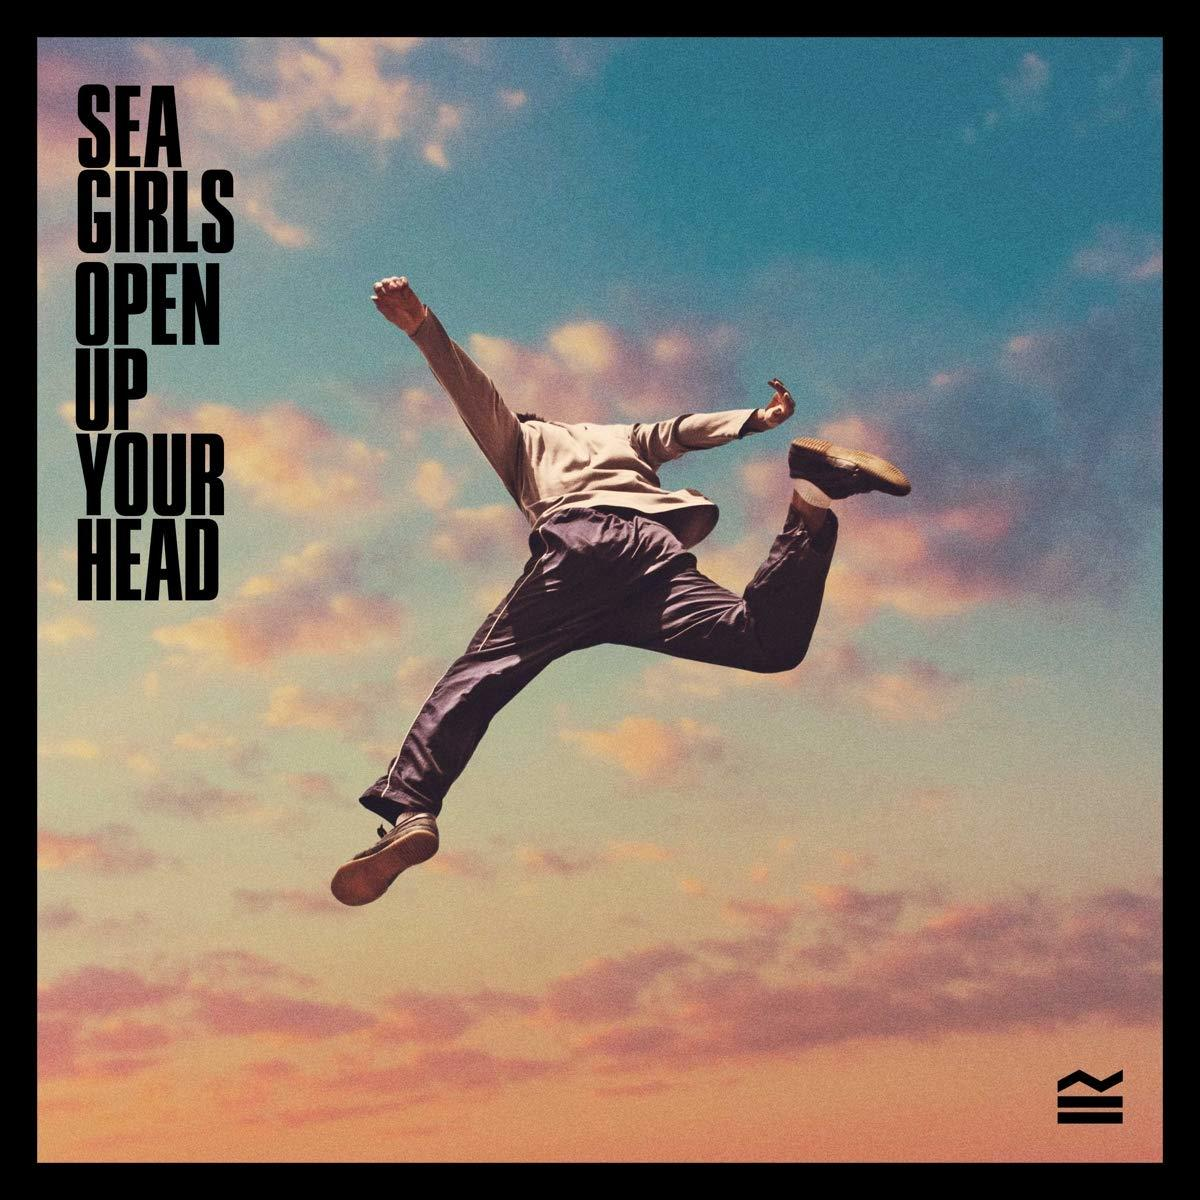 Sea (Vinyl) Girls OPEN HEAD (VINYL) YOUR UP - -